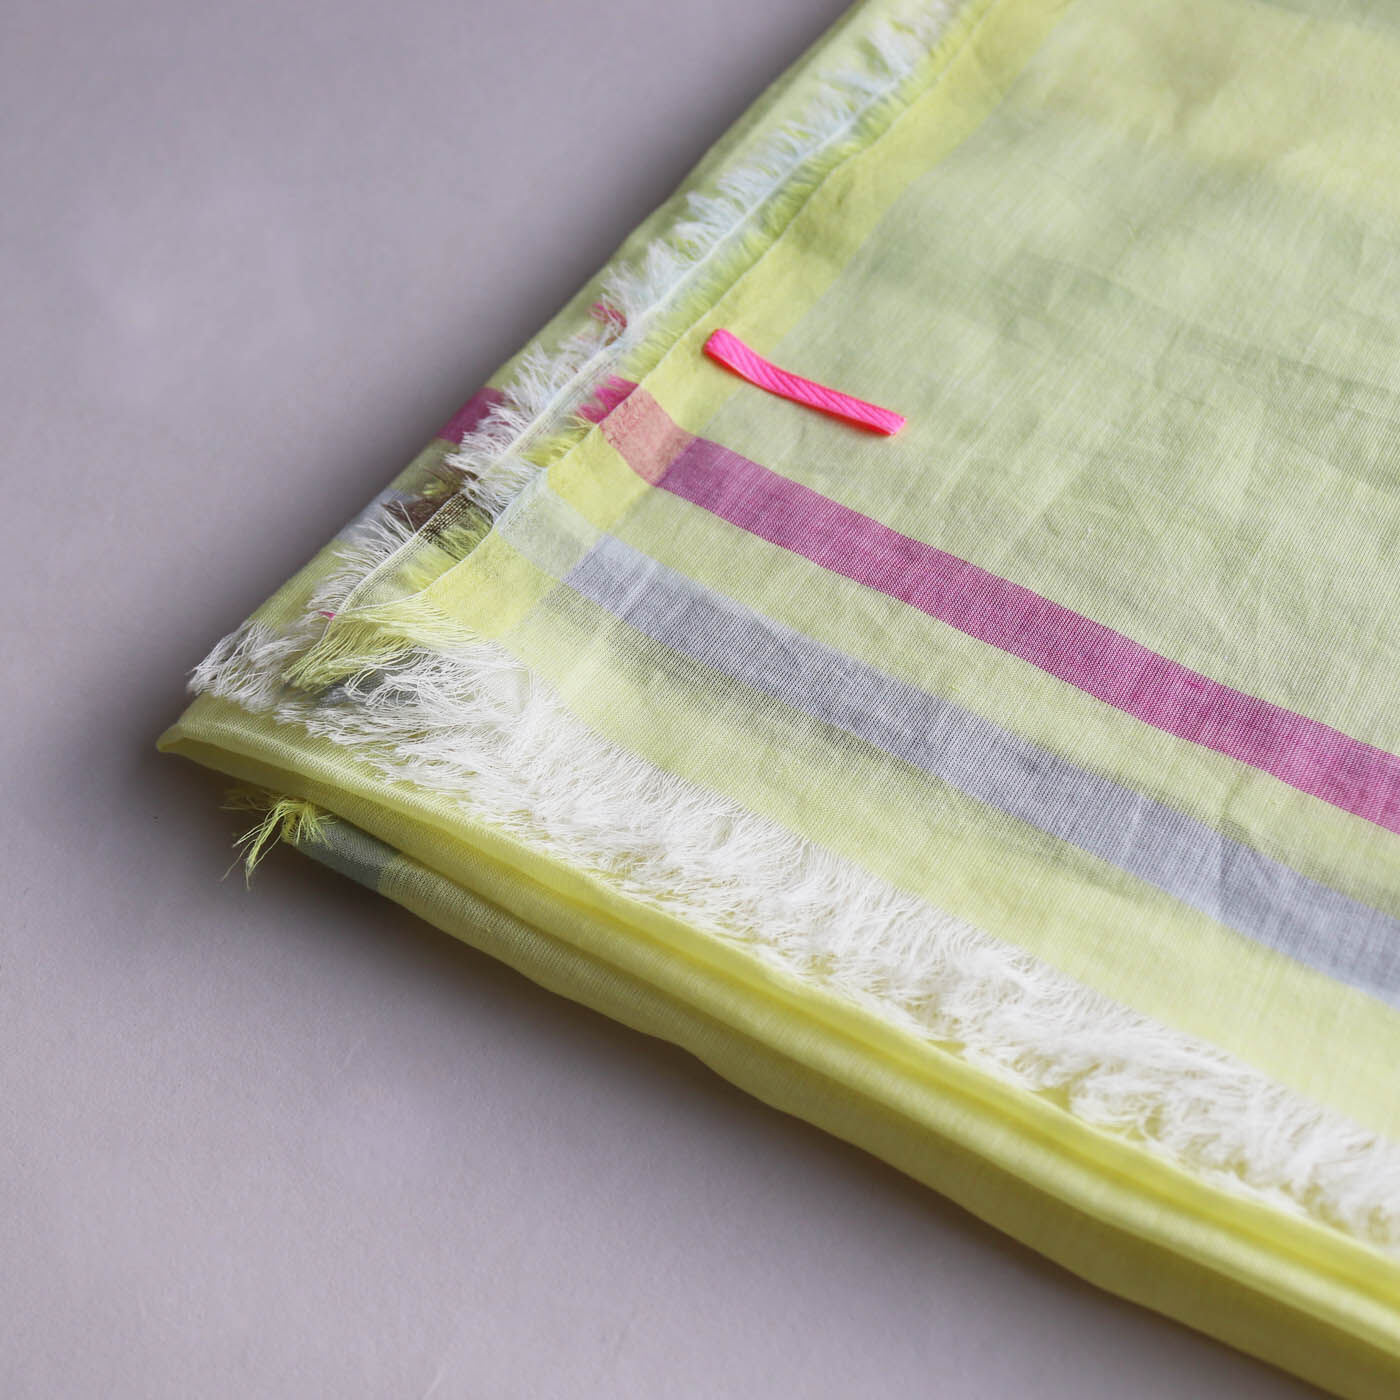 ＆Stories|テキスタイルデザイナーと作った 播州織のそよ風みたいなストール 〈レモンイエロー〉|コンピュータージャカードの高い技術で織り上げる繊細さが魅力です。